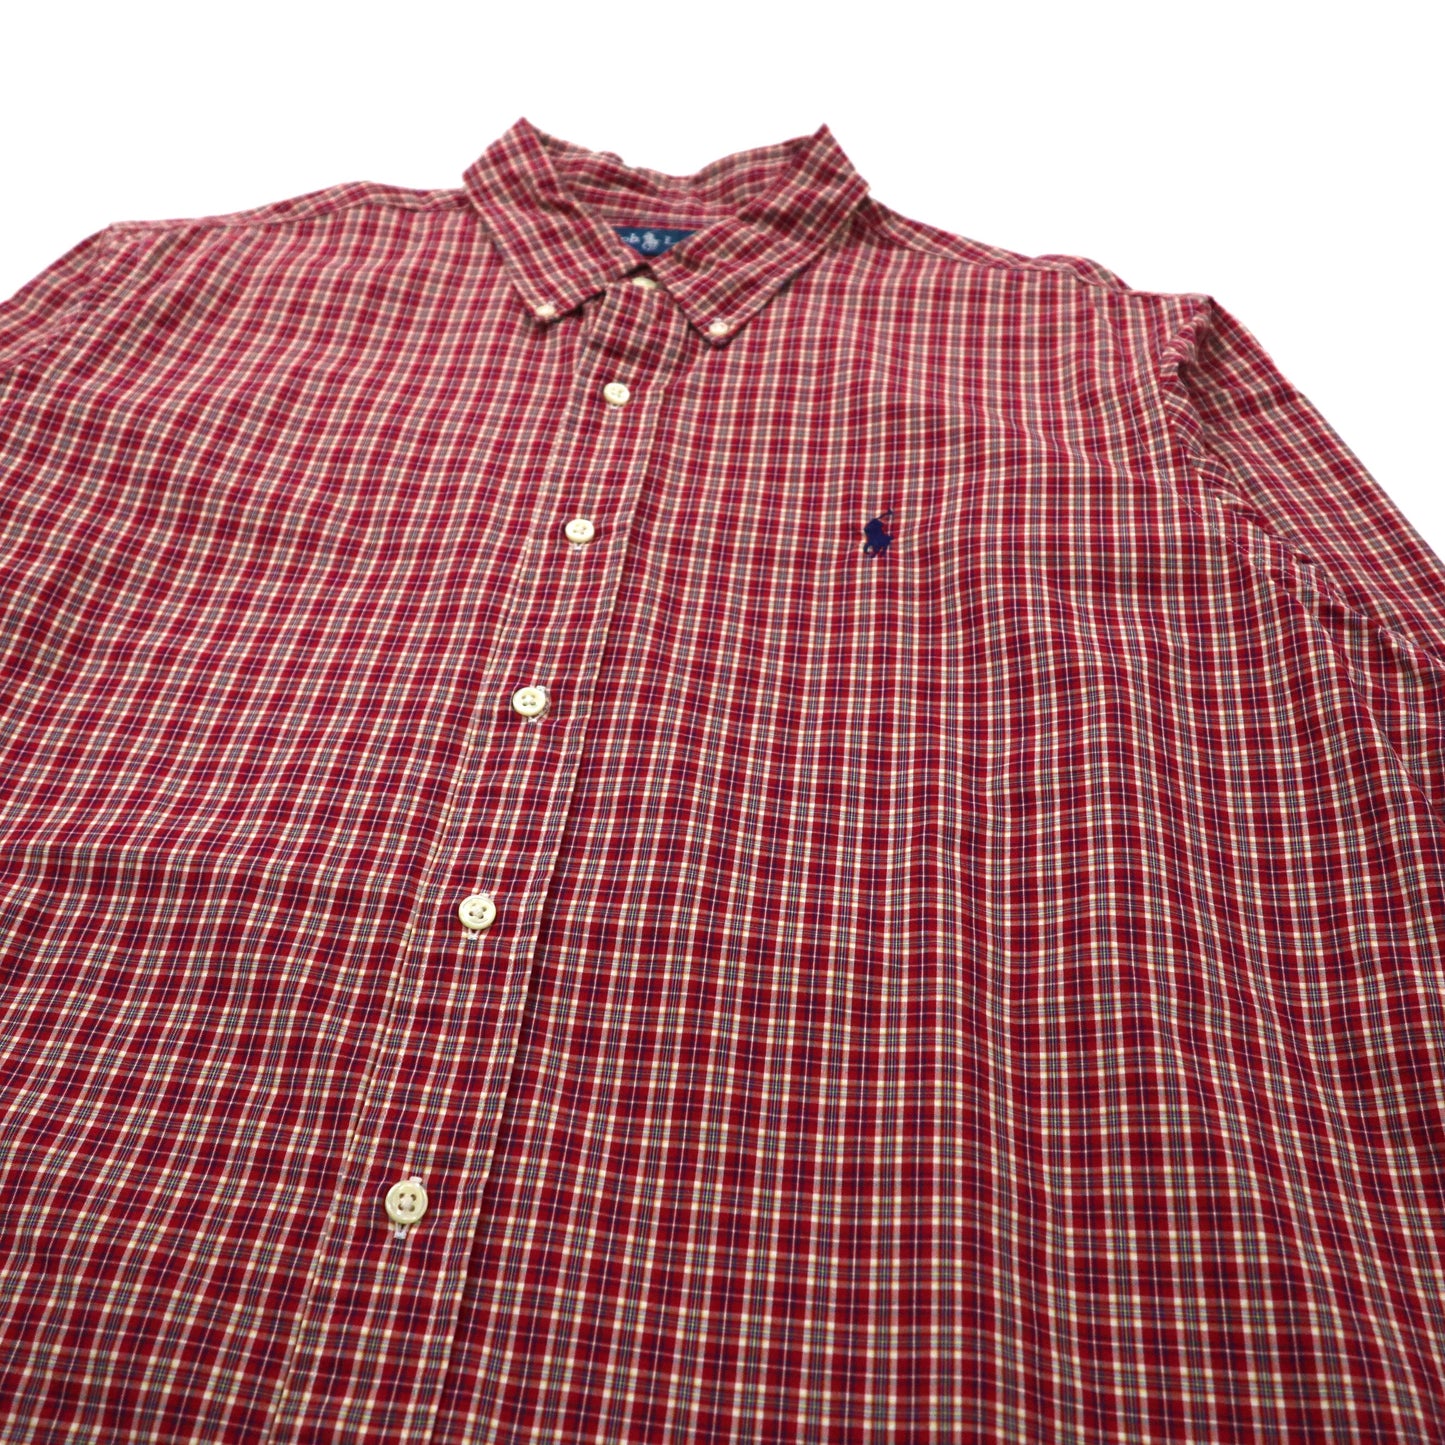 Ralph Lauren ボタンダウンシャツ XL レッド コットン CUSTOM FIT スモールポニー刺繍